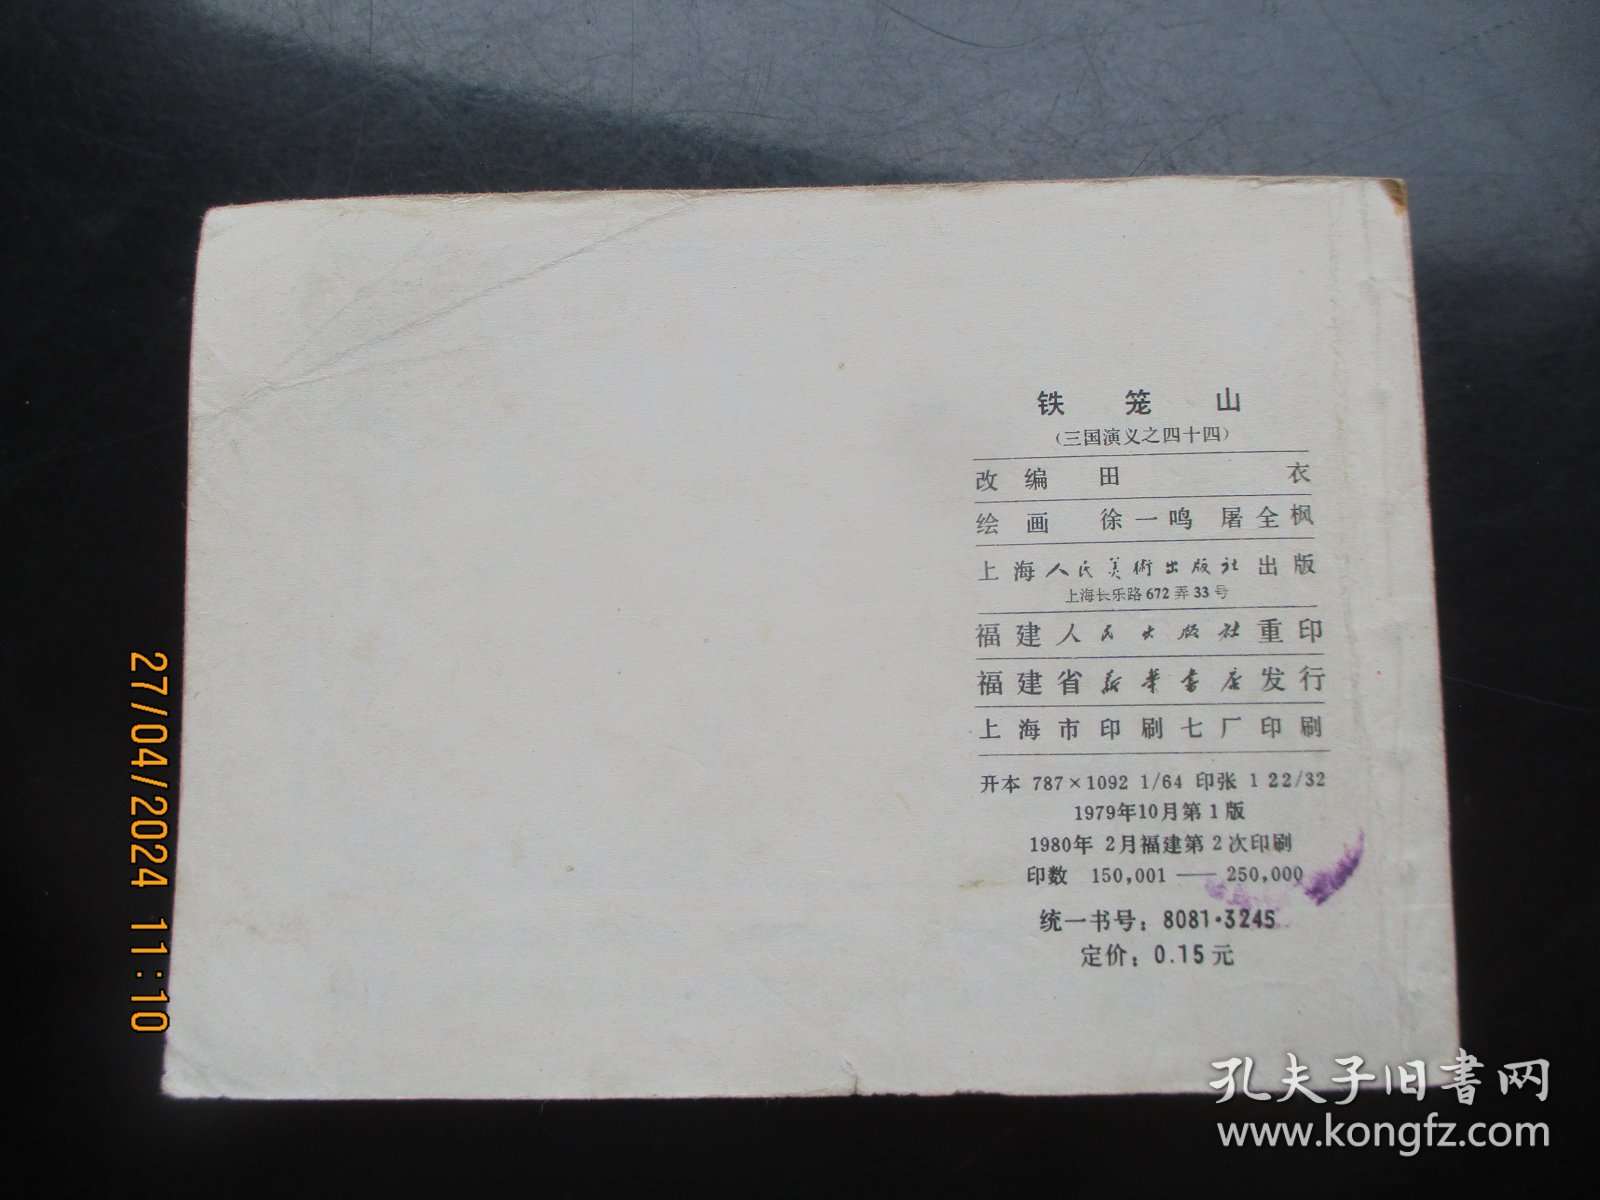 直版连环画《铁笼山》1979年，1册全，一版二印，上海人民美术出版社，品好如图。